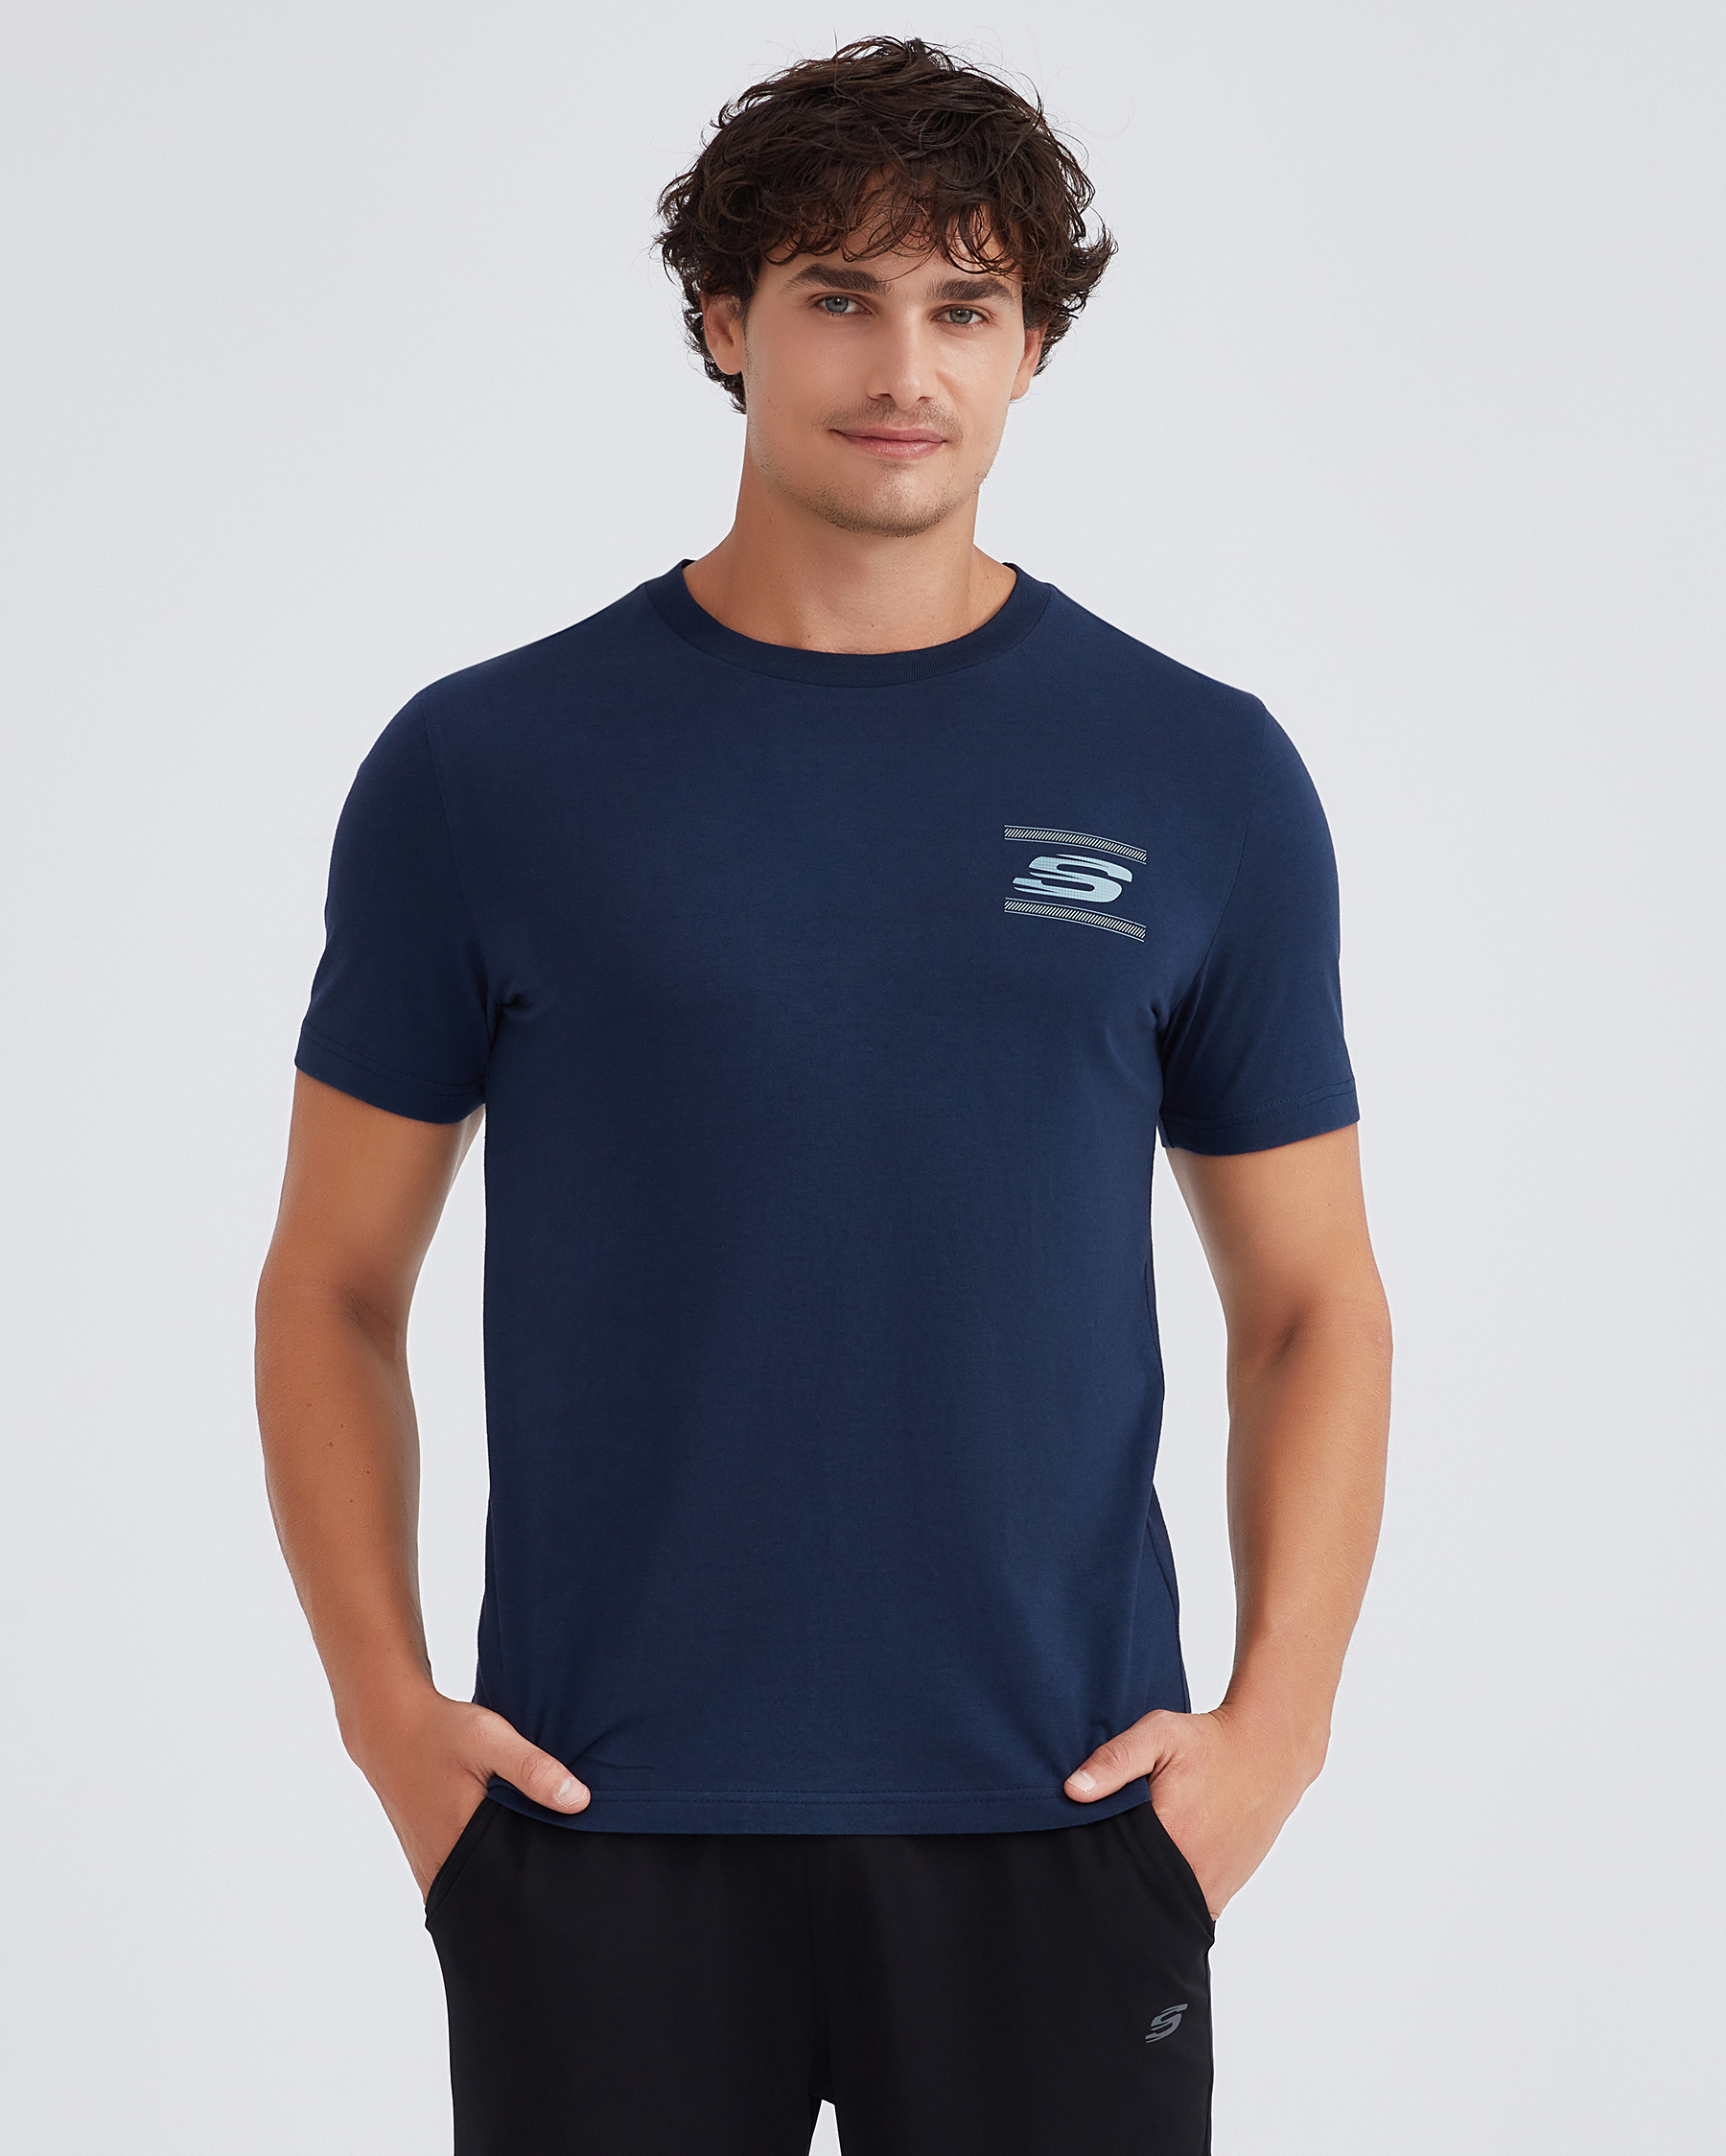 Lacivert S232339-410 Crew T-shirt Graphic Tshirt Erkek Neck Skechers Tee M